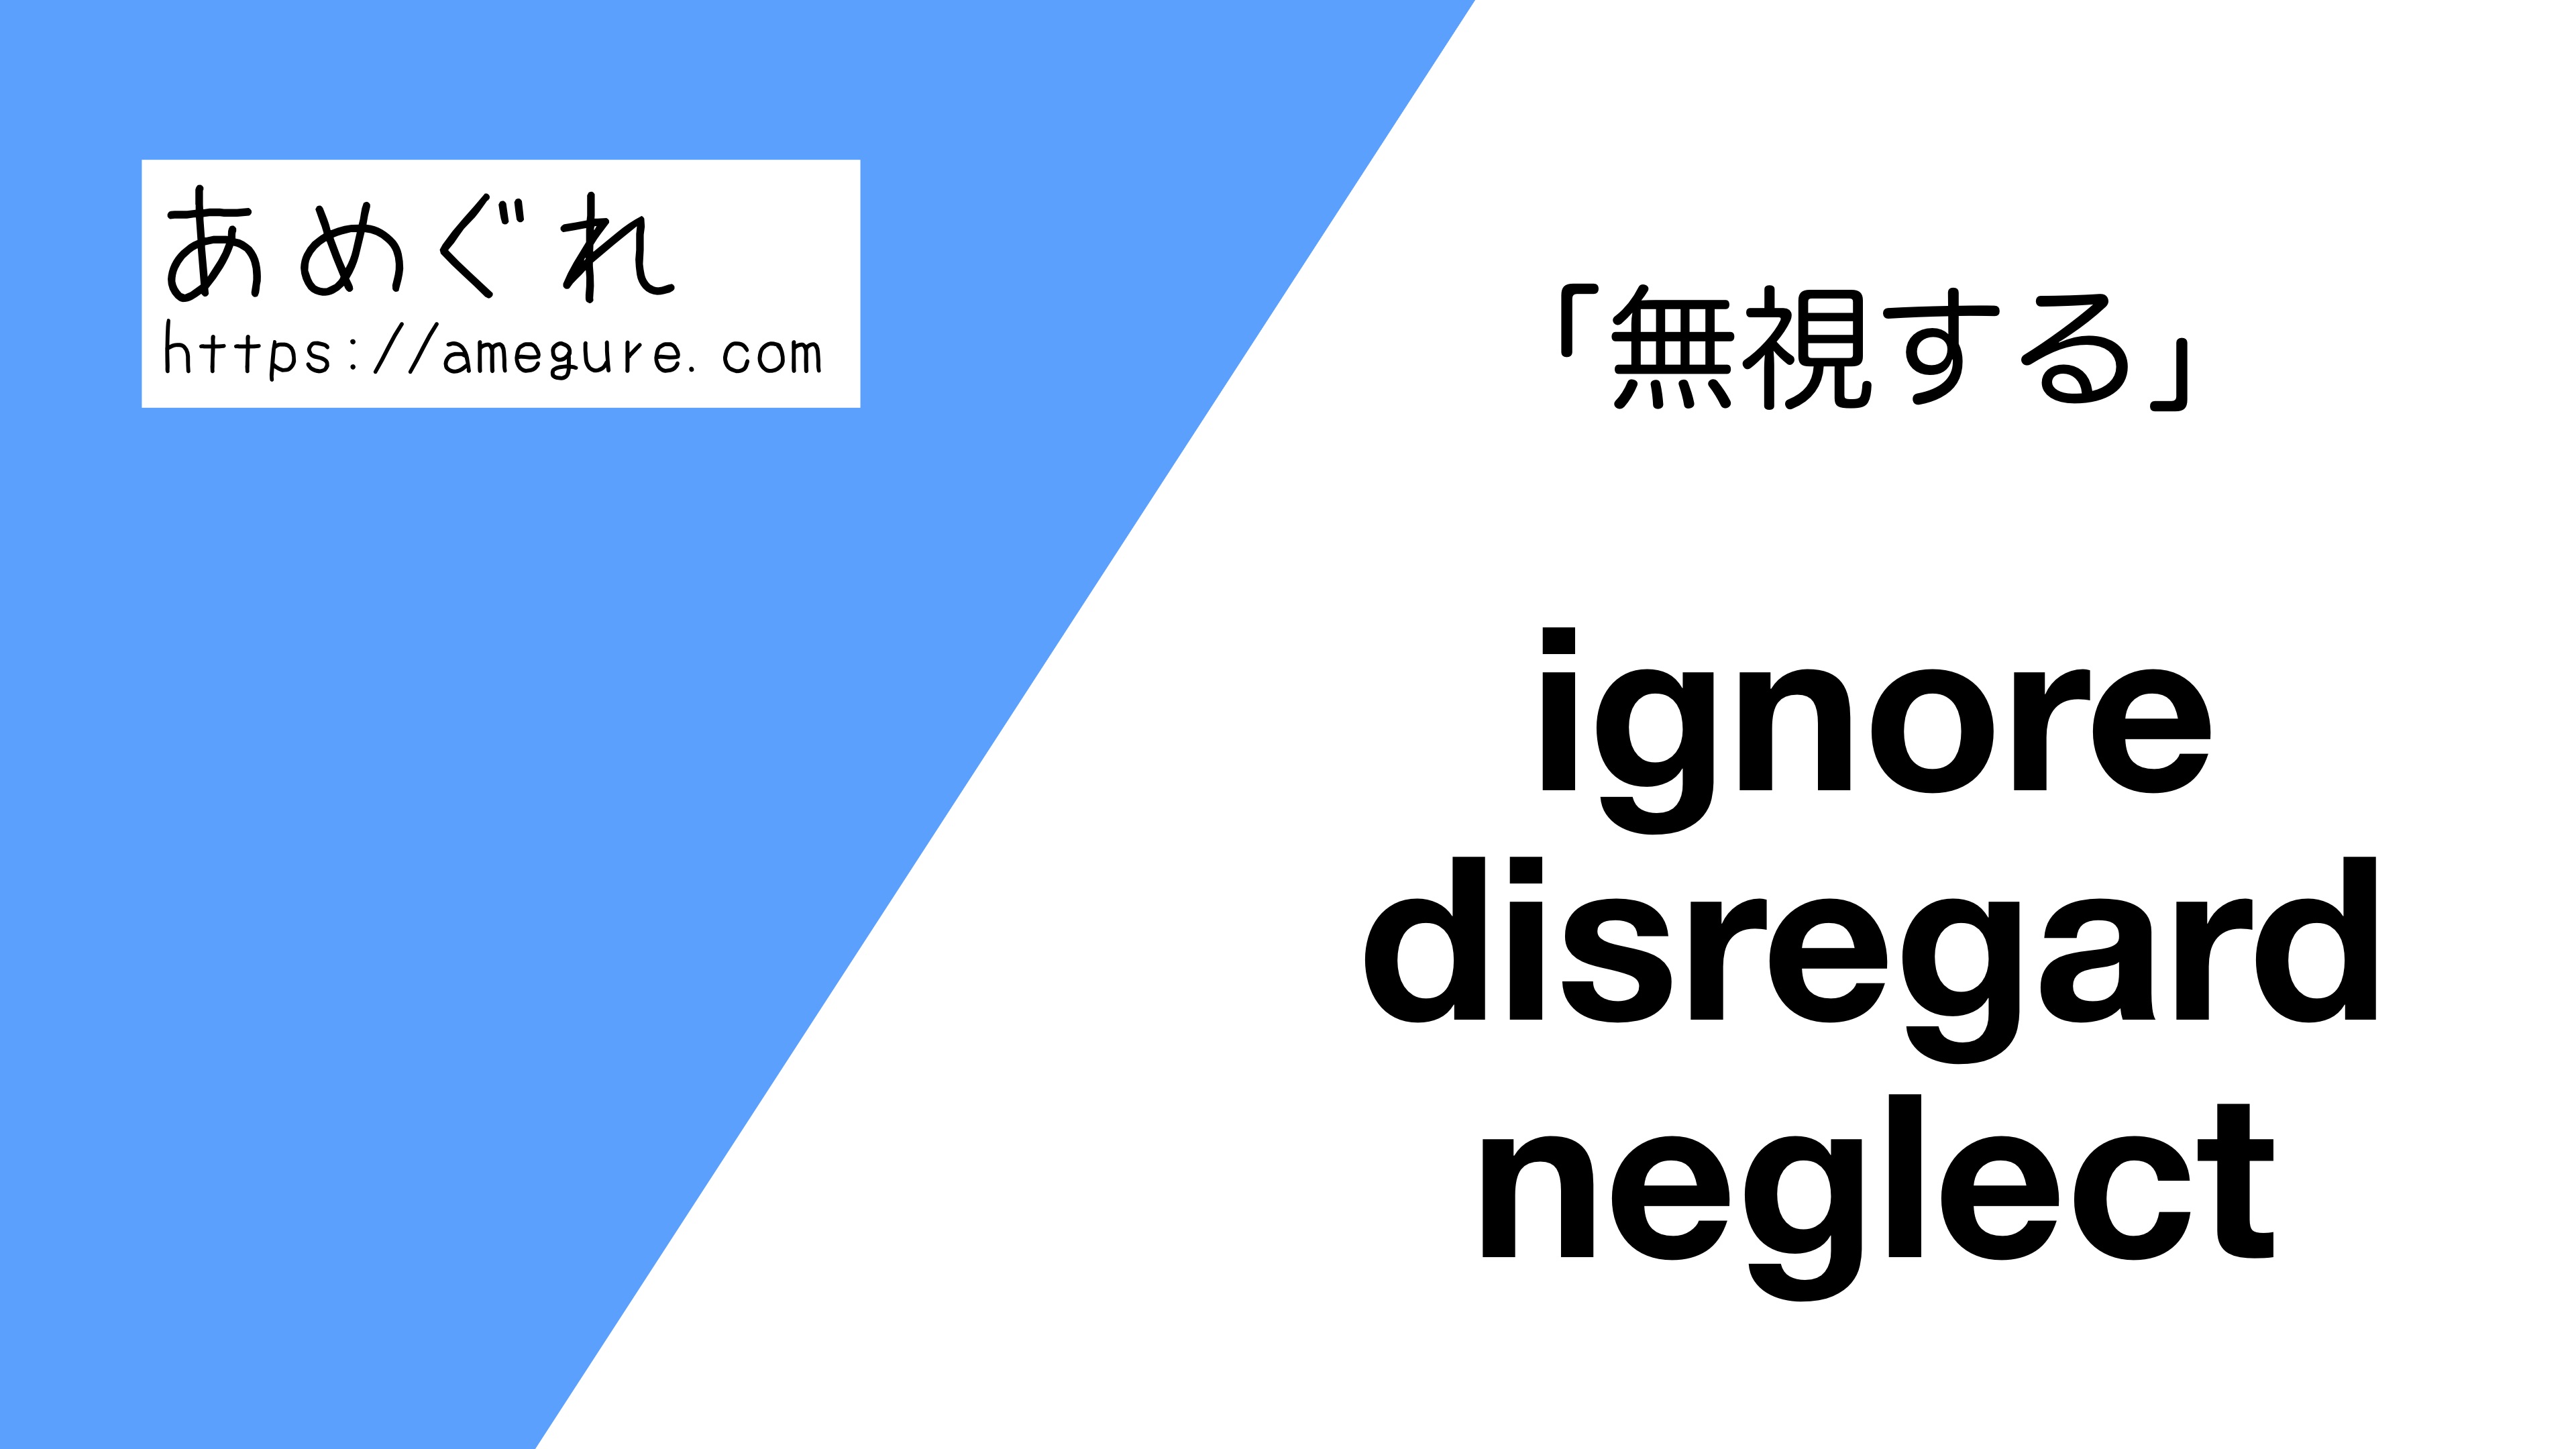 英語 Ignore Disregard Neglect 無視する の意味の違いと使い分け